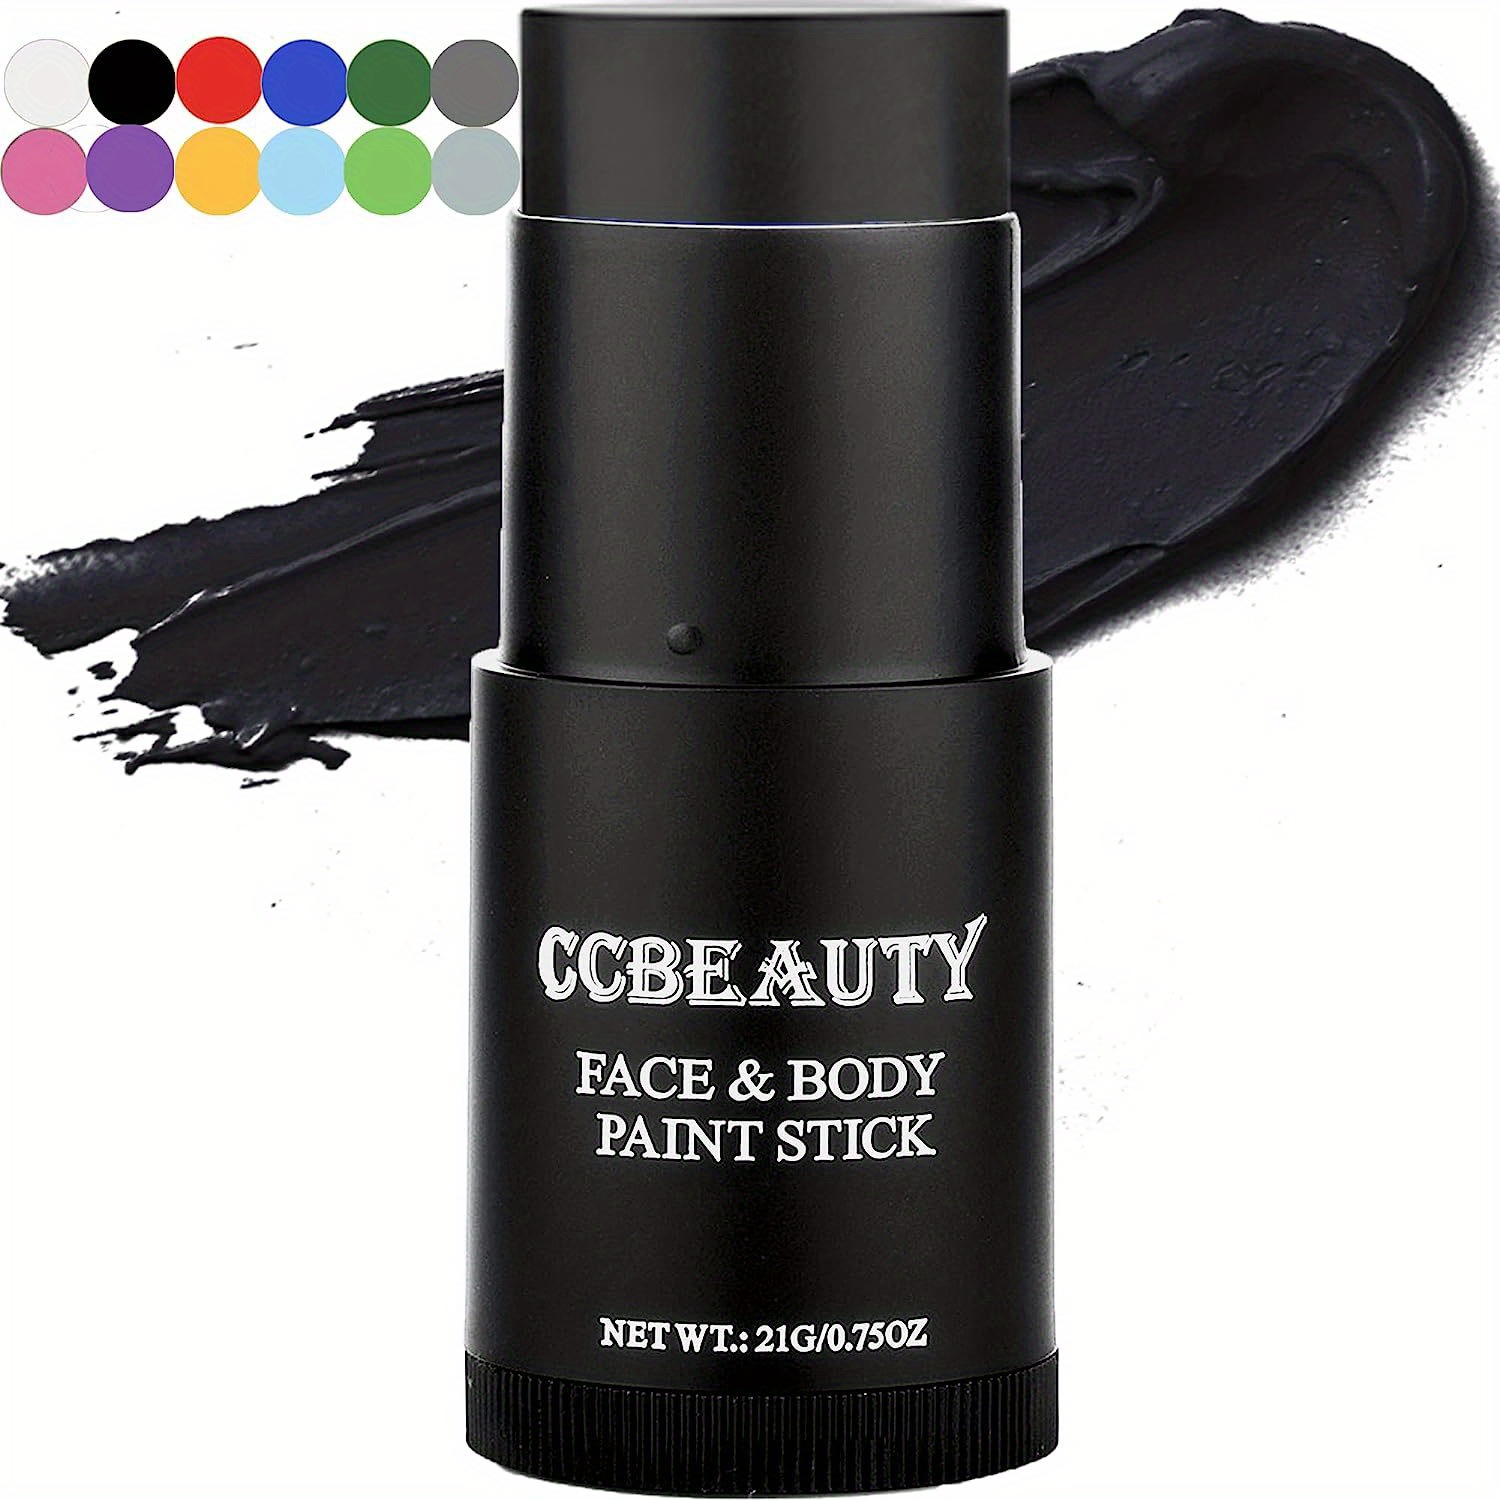 Eye Black Stick Face Paint Kit Cream Blendable Stick